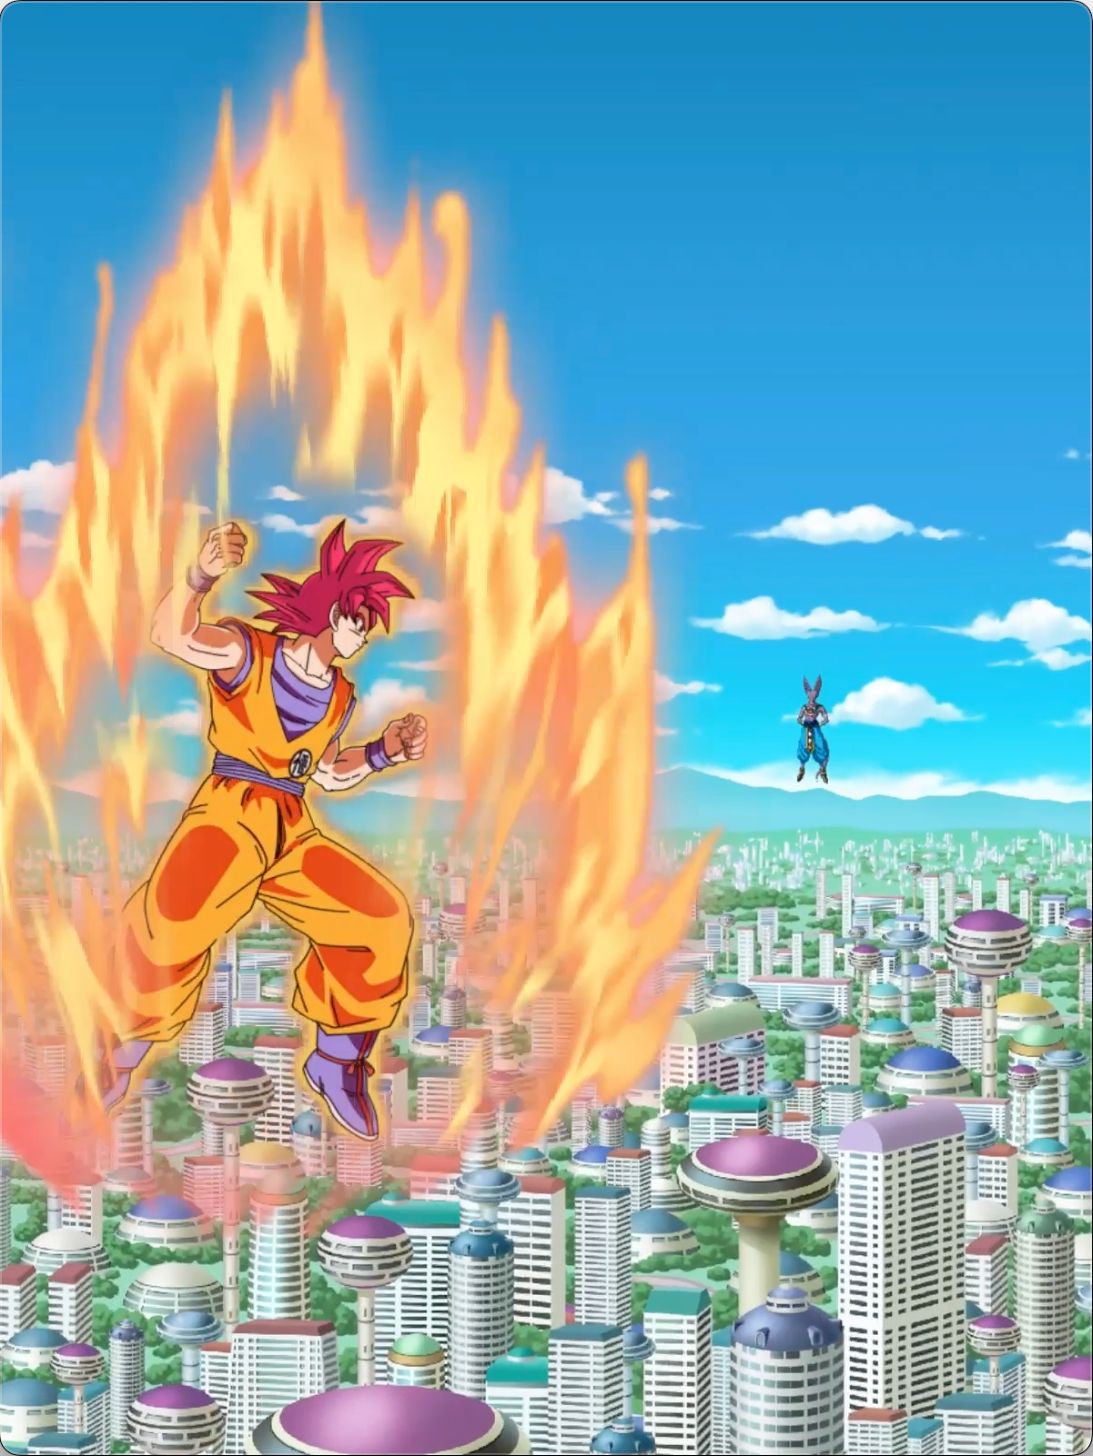 Here’s How Dragon Ball Z Dokkan Battle’s Super Saiyan God Goku Was Made